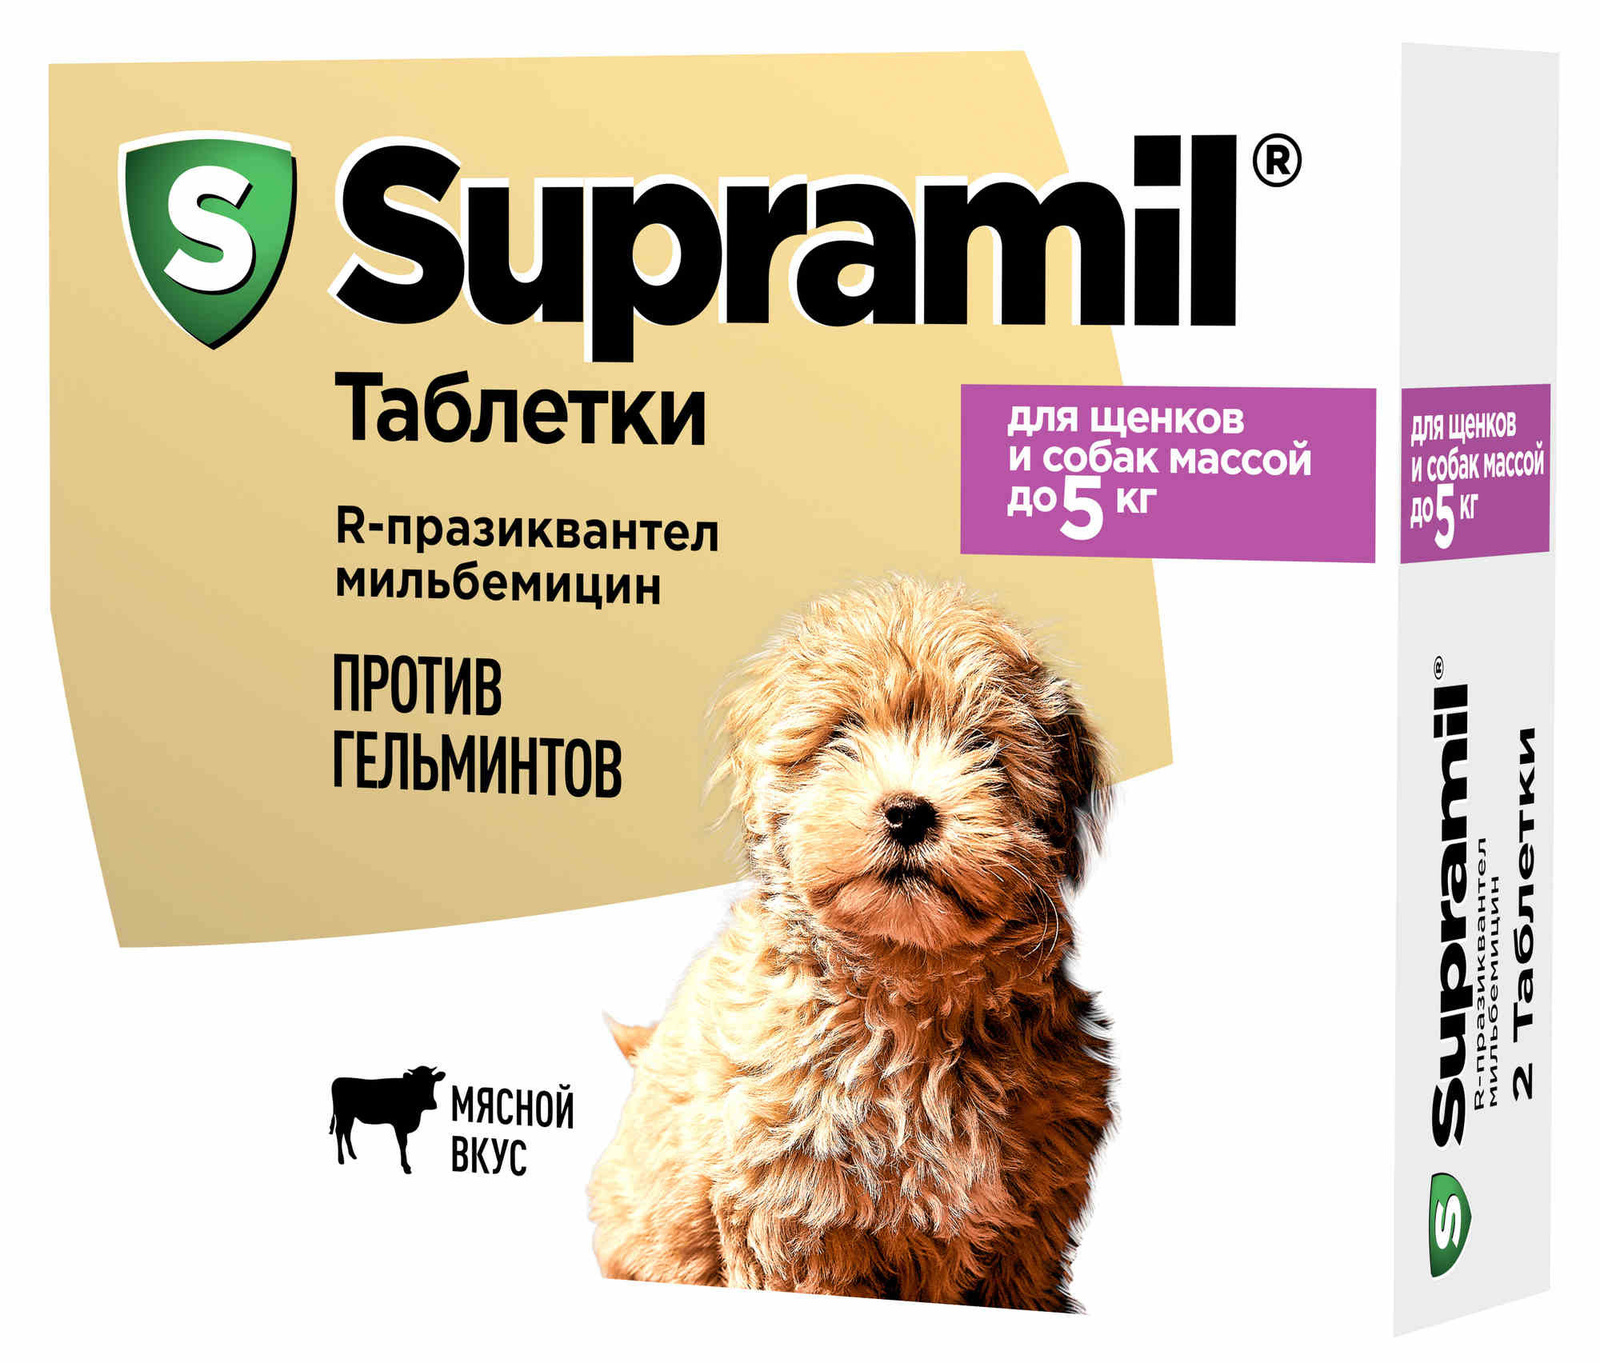 Астрафарм Астрафарм антигельминтный препарат Supramil  для щенков и собак массой до 5 кг, таблетки (20 г)